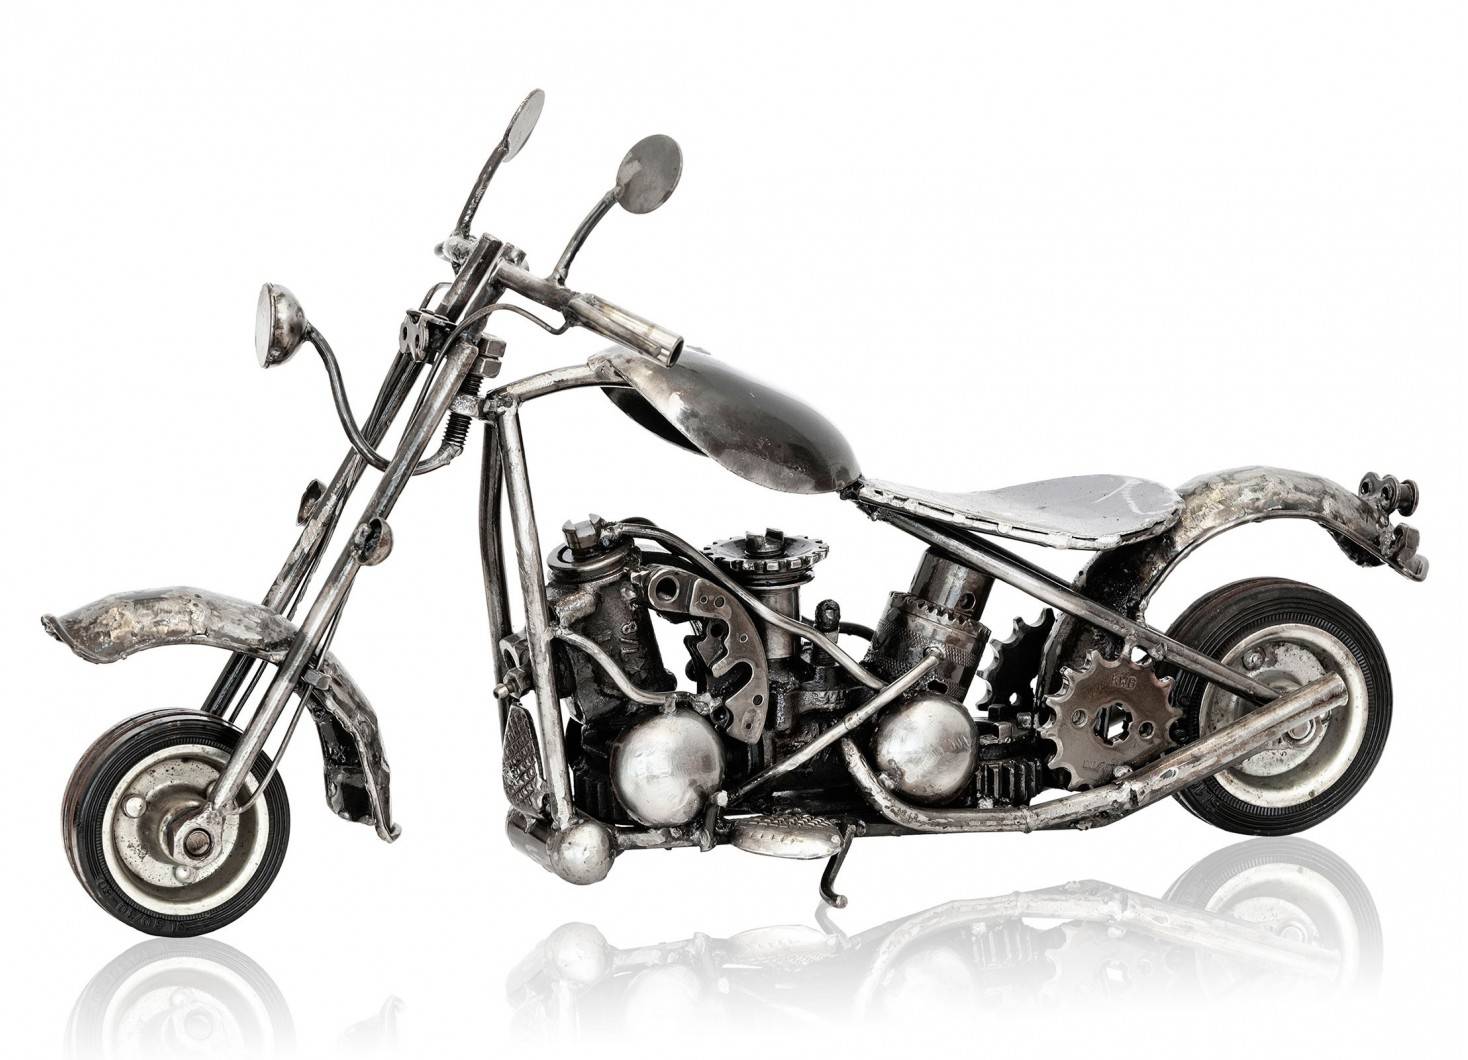 Statuette de moto cross en métal